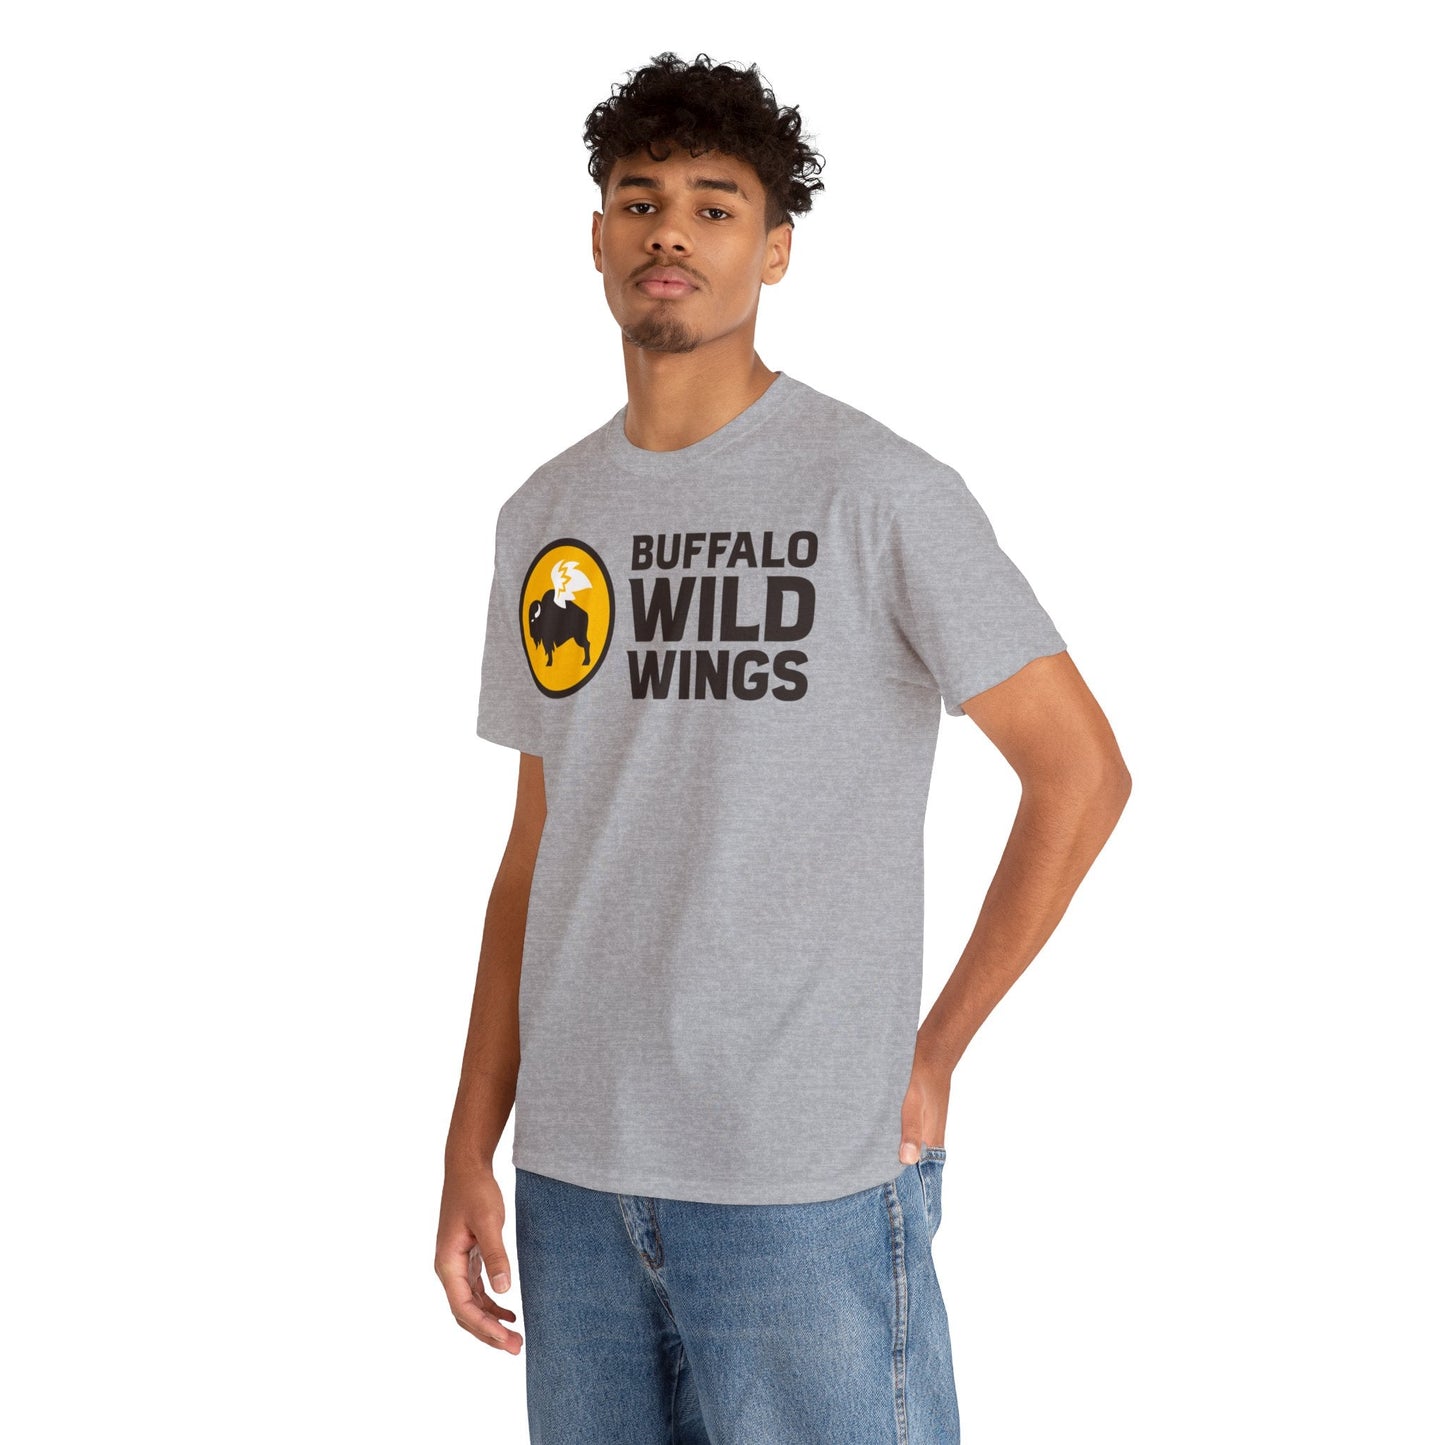 Buffalo Wild Wings Classic Logo T-Shirt - RetroTeeShop